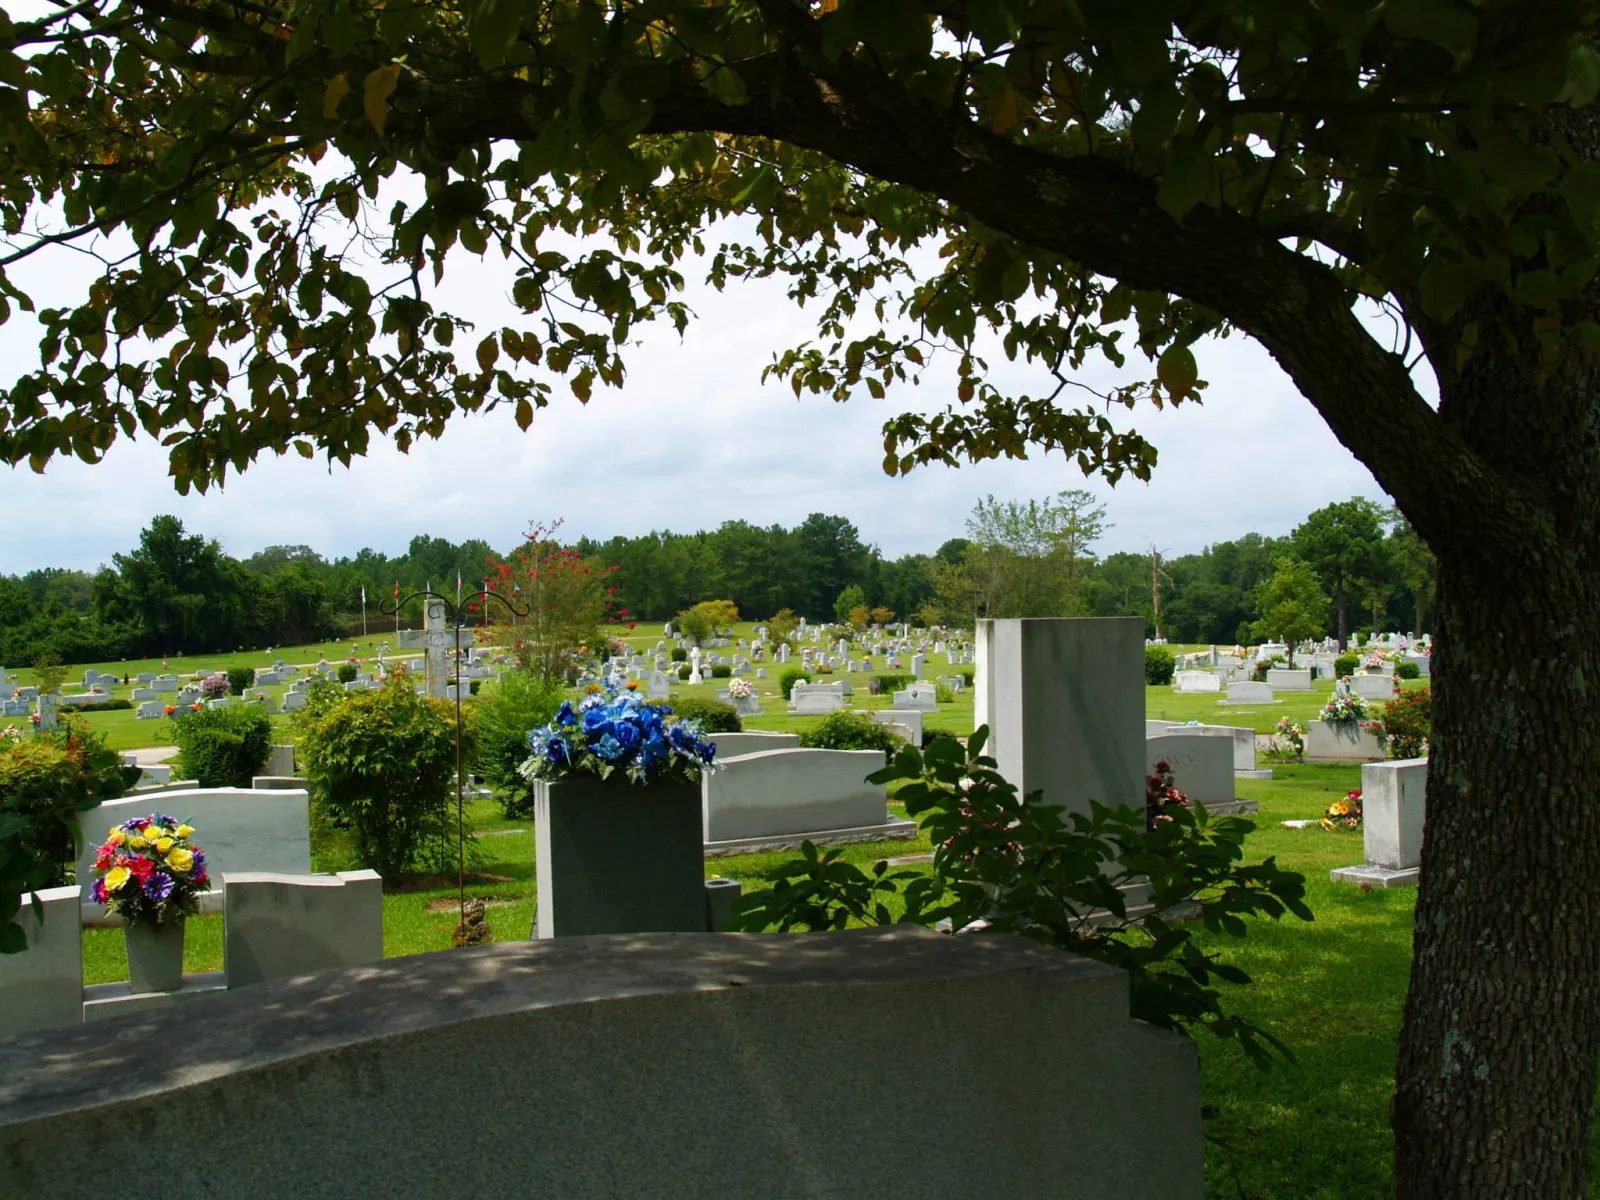 View of Crestwood Memorial Funeral Home in Gadsden, Alabama.